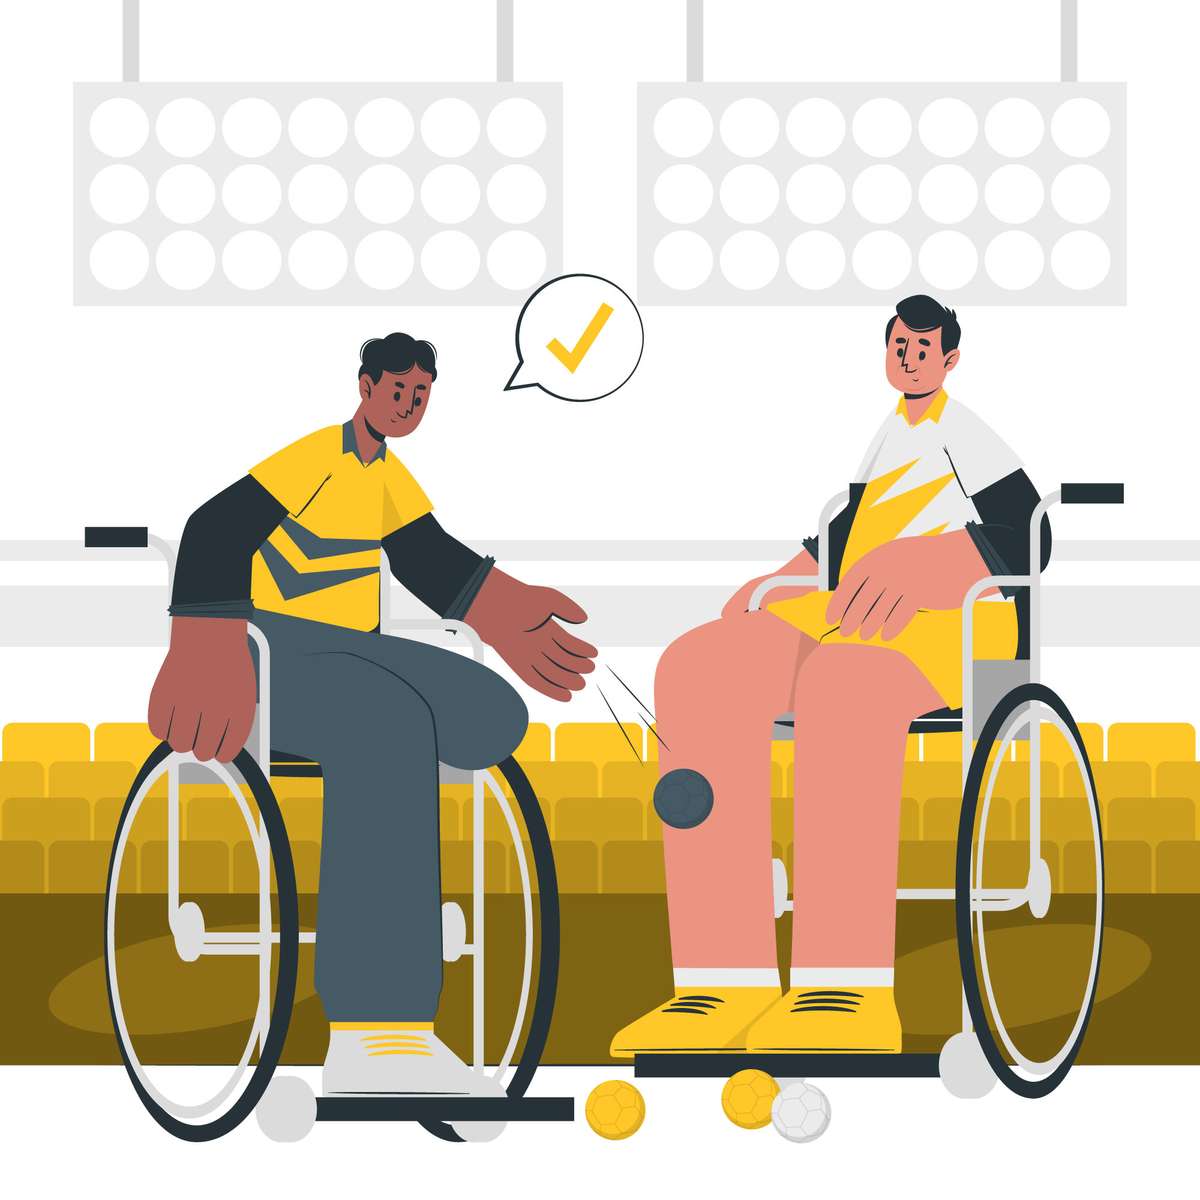 BOCCIA - Jeu Paralympique puzzle en ligne à partir d'une photo